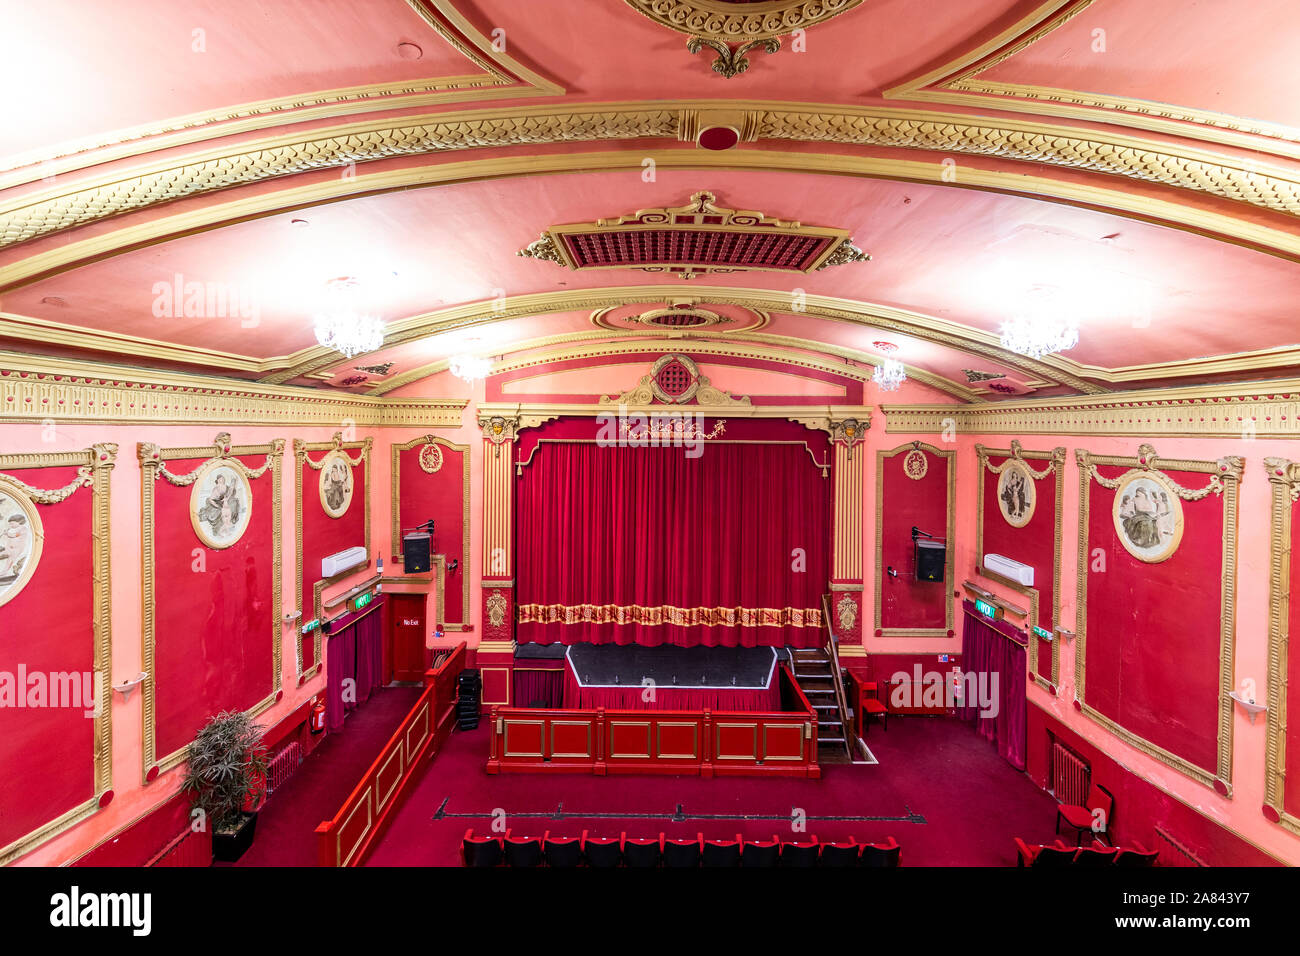 Savoy Theatre, Monmouth un grado 11 elencati venue votato 2019 Teatro dell'anno in gallese Ospitalità Awards Foto Stock